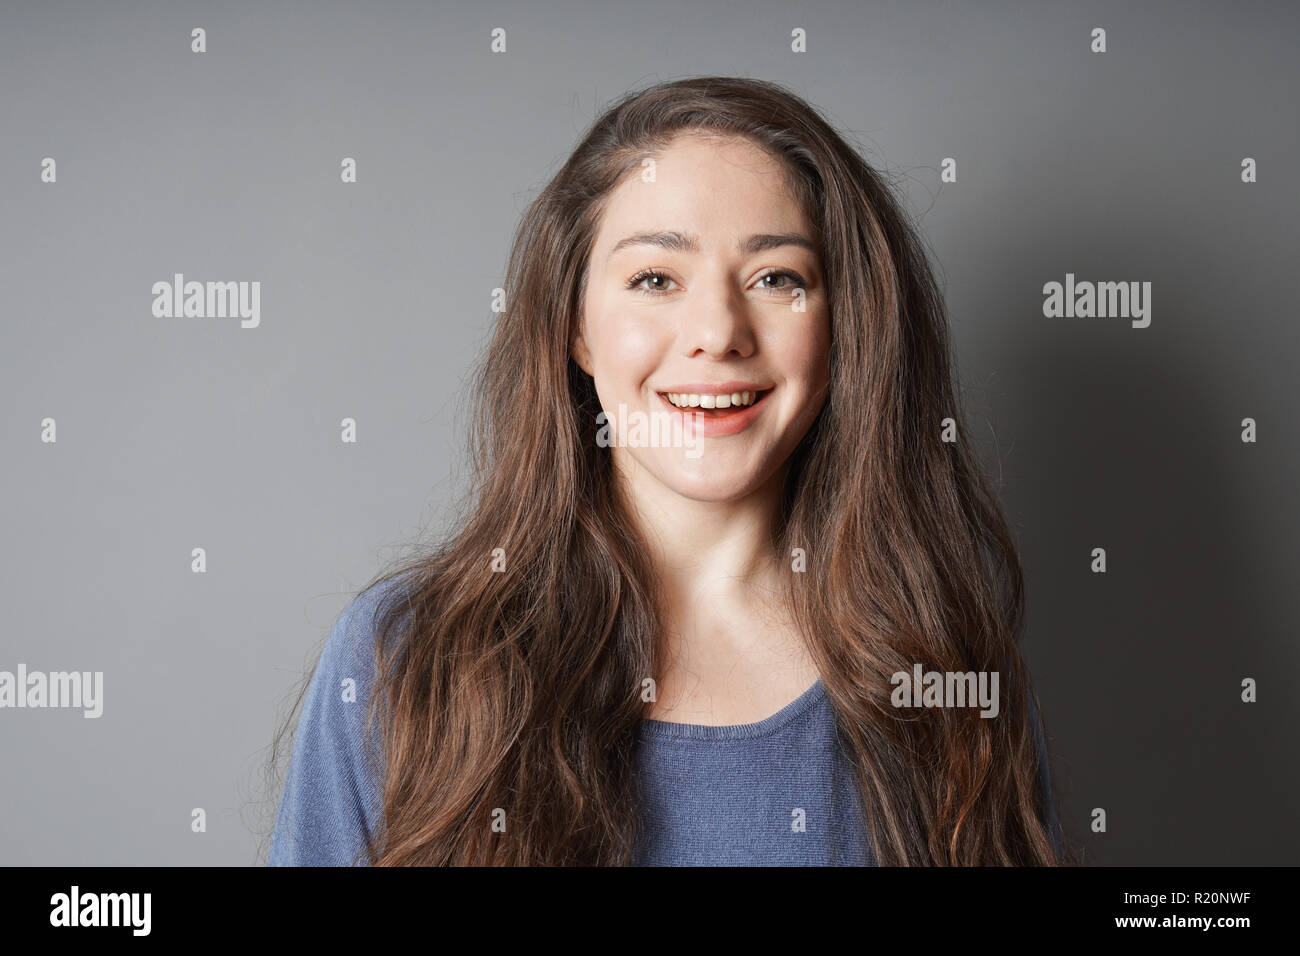 Glückliche junge Frau in ihrem 20s mit großen toothy Lächeln Stockfoto